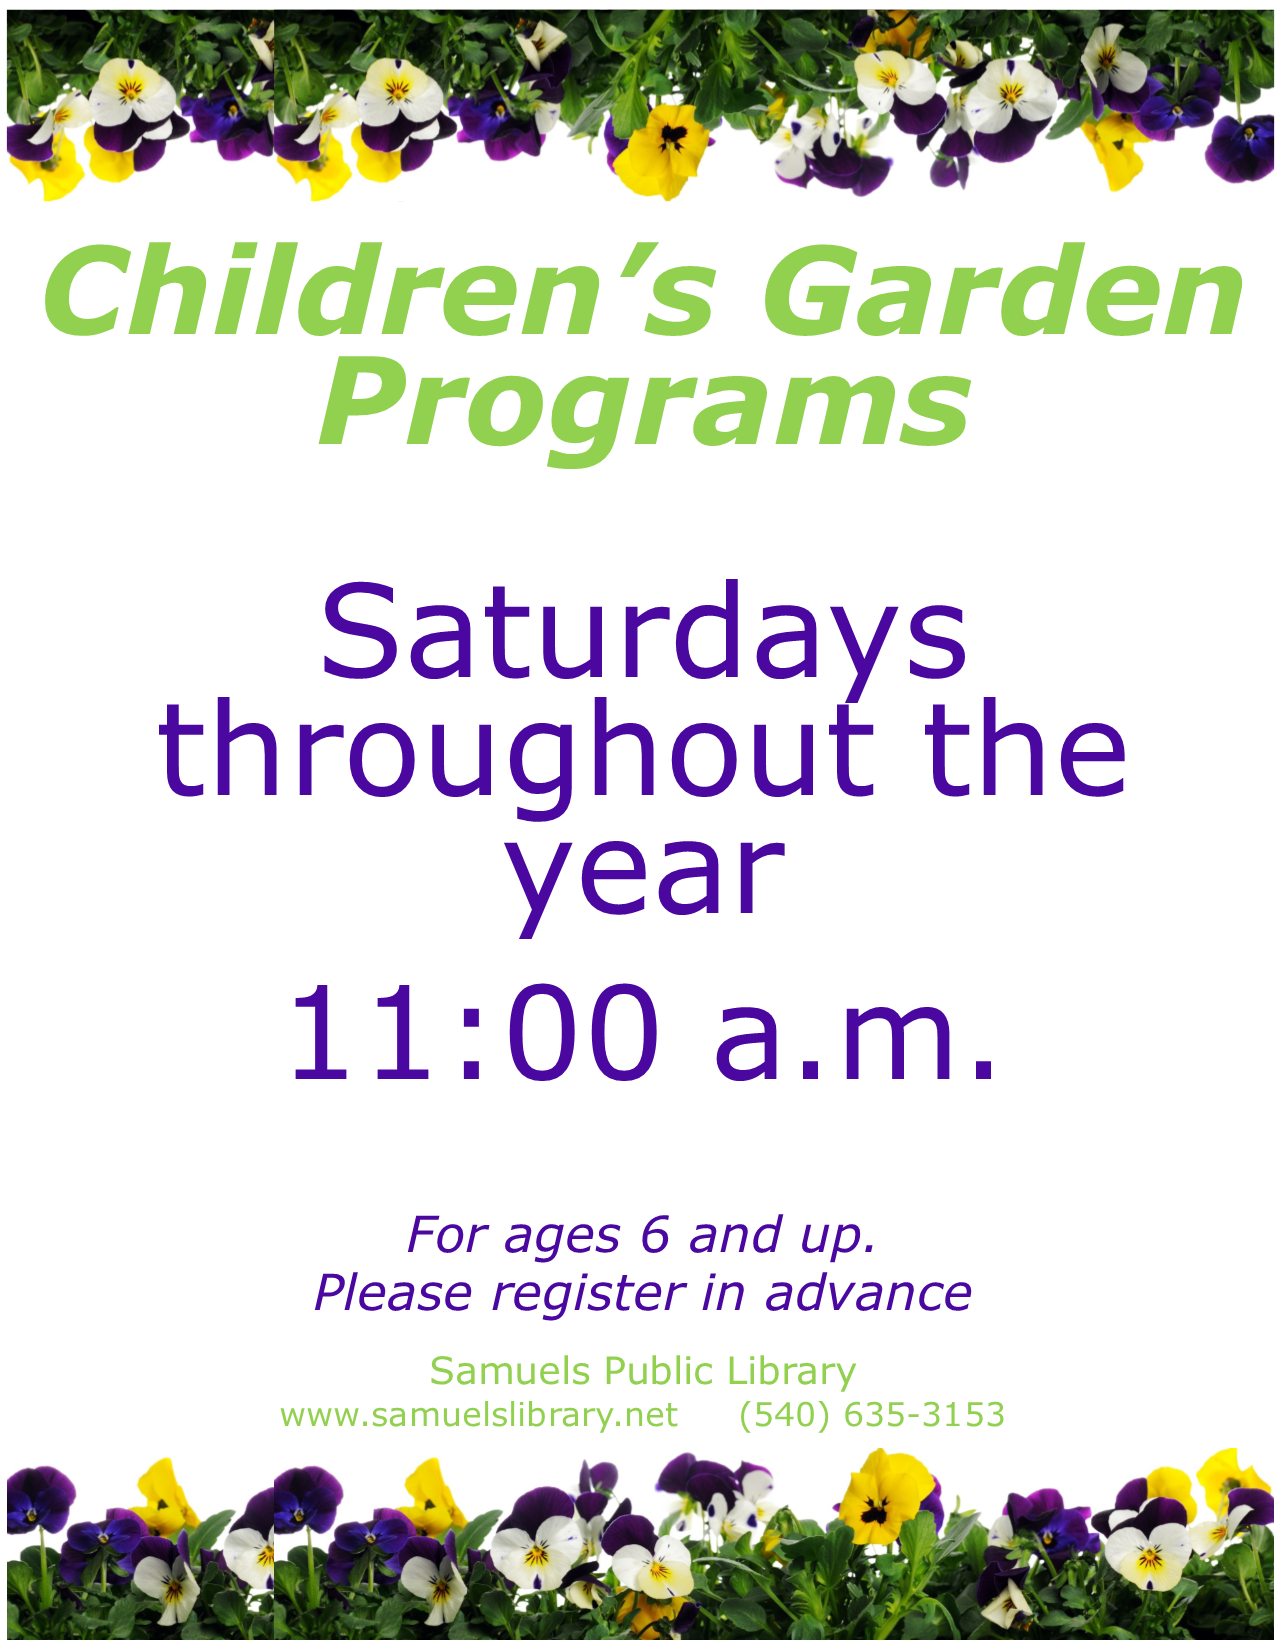 Children's Garden programs meet on Saturdays throughout the year.